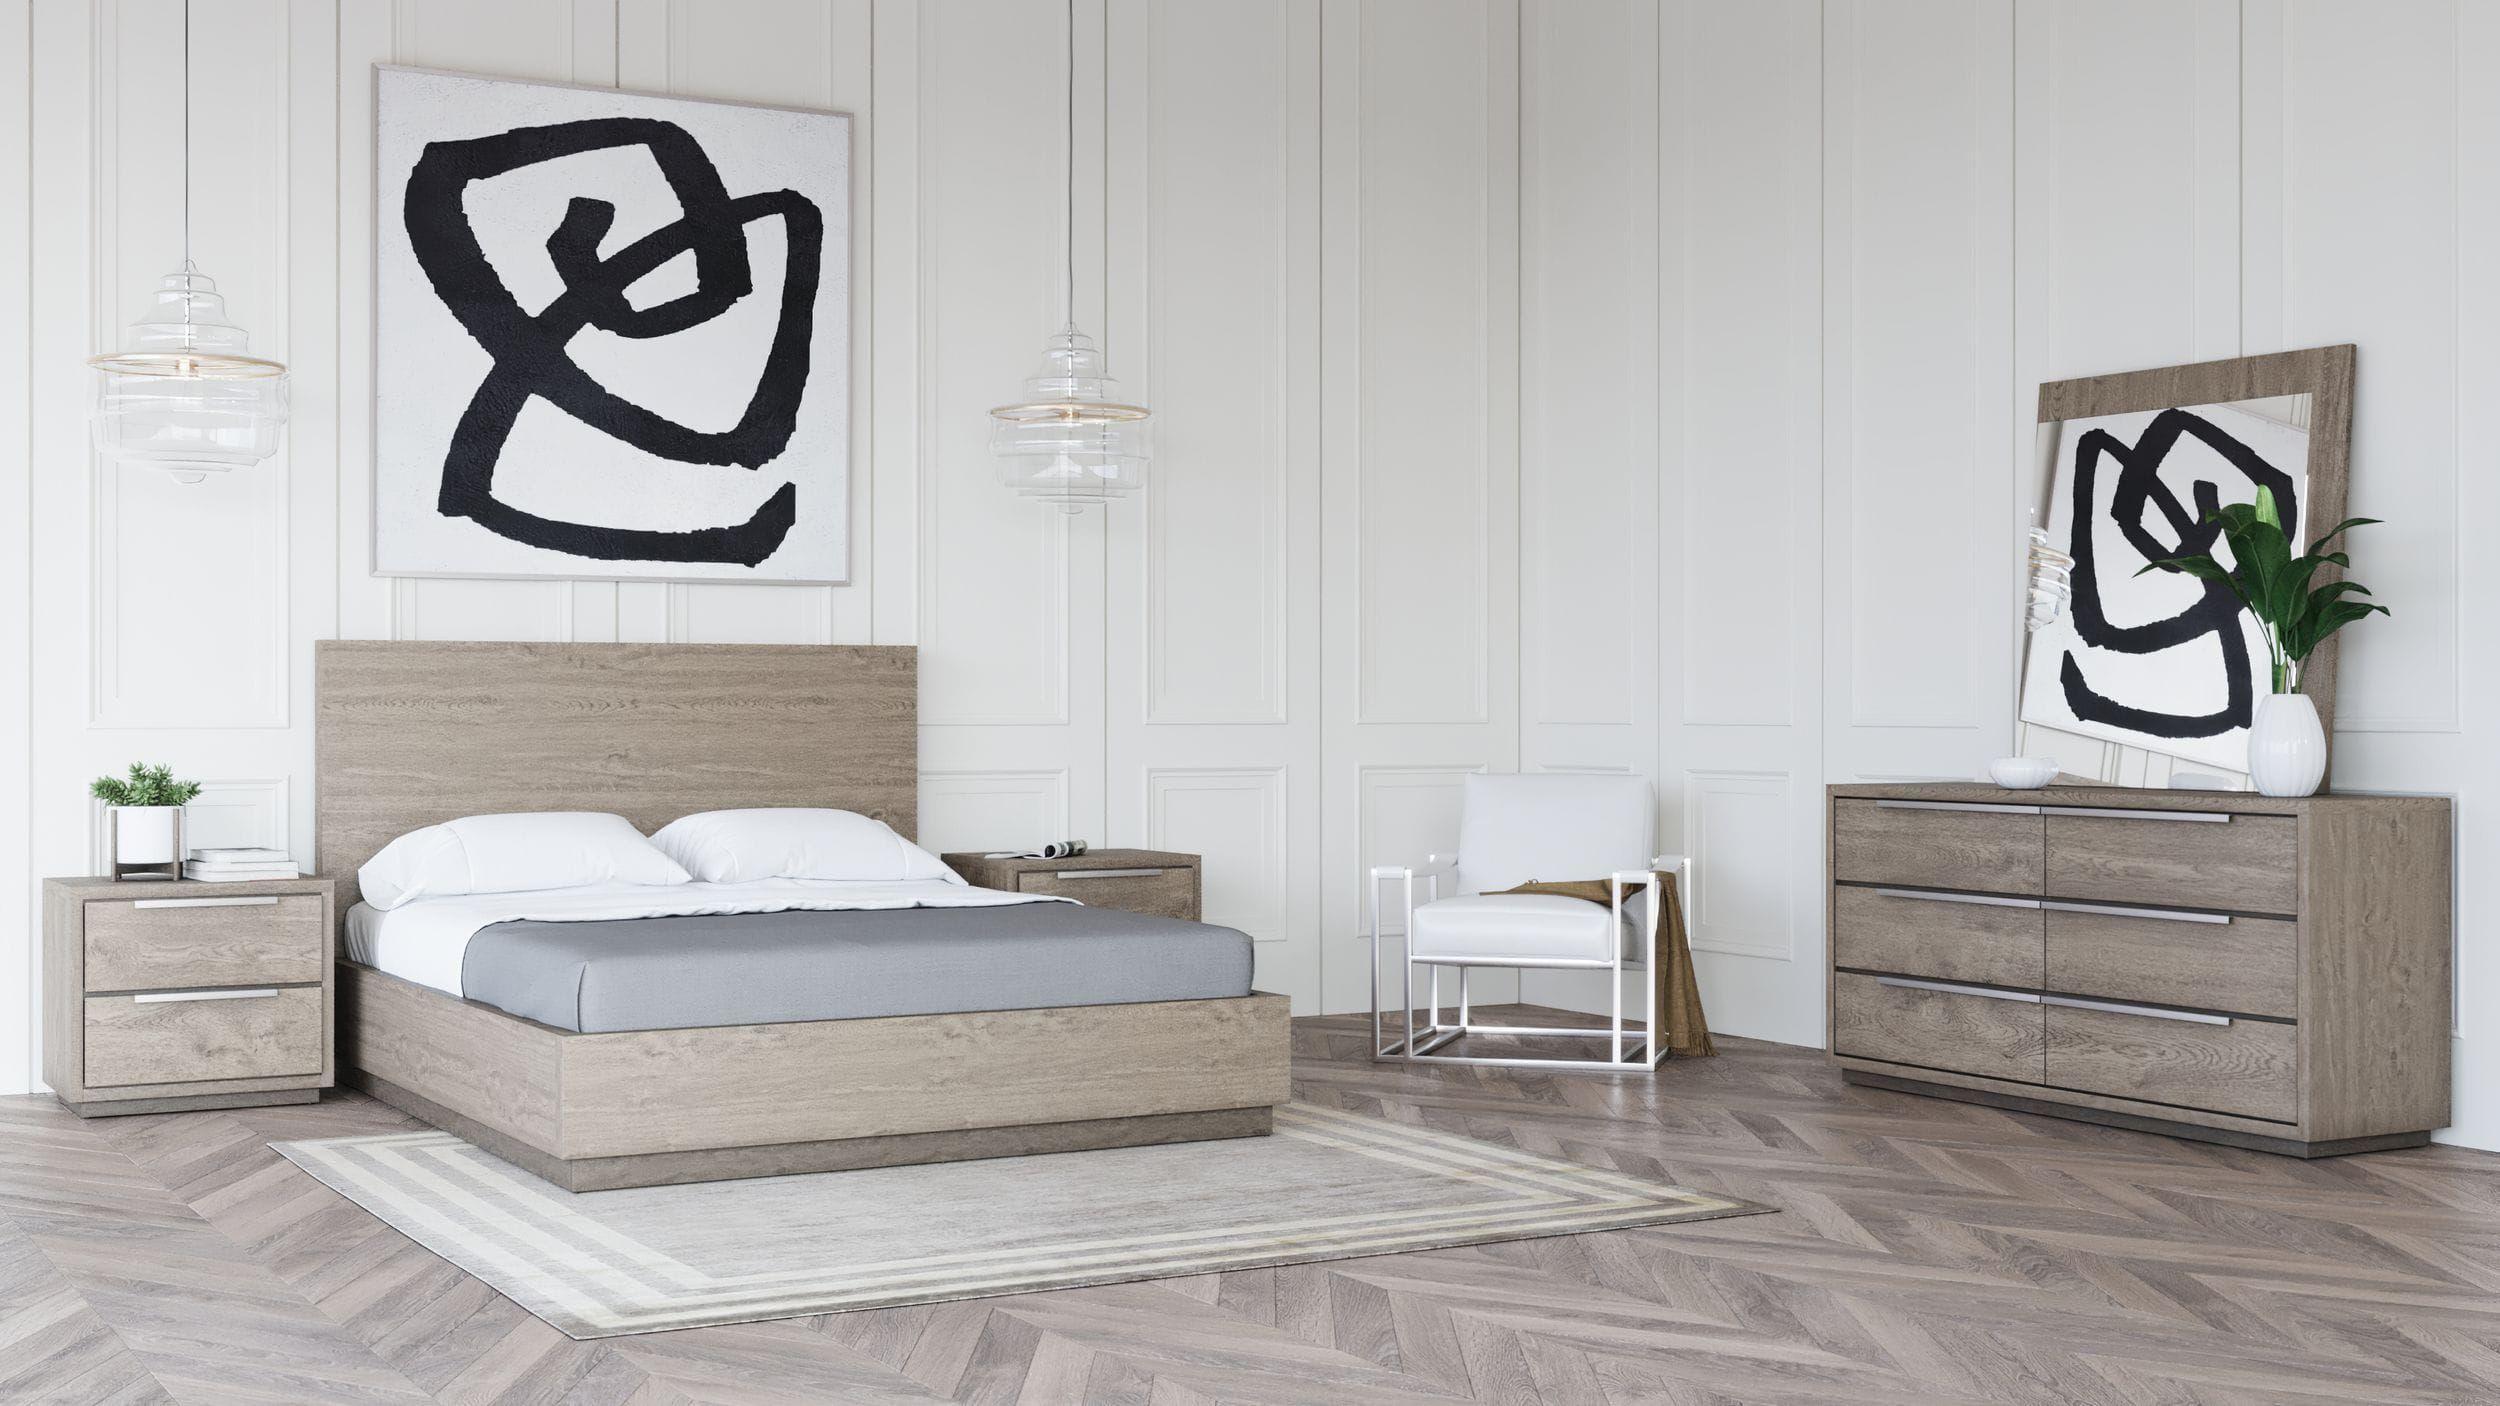 

    
Oak & Silver King Size Bedroom Set 5Pcs by VIG Modrest Samson
